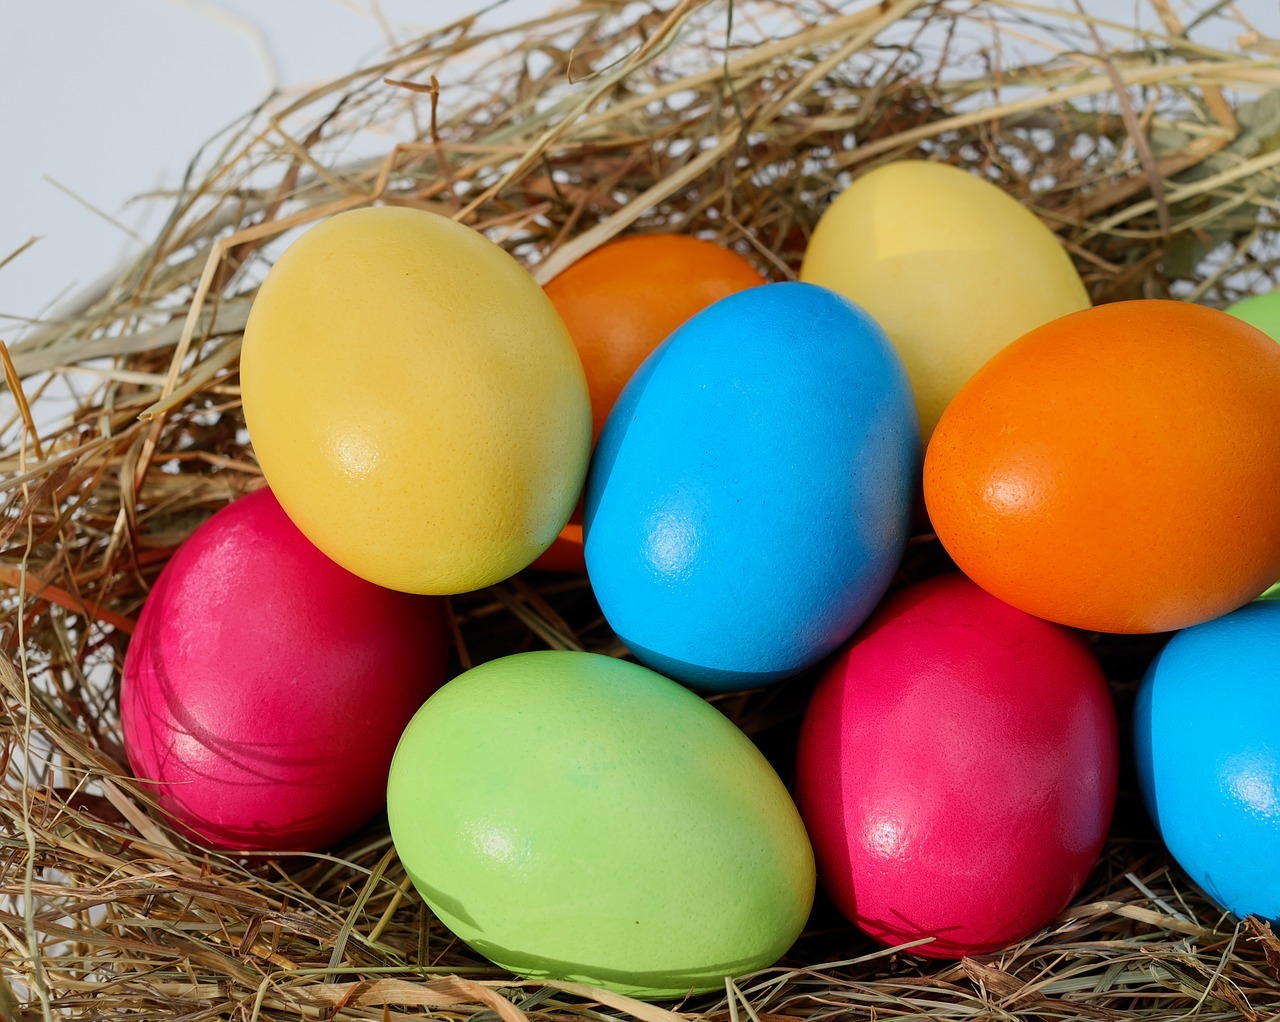 Чем красить яйца без риска для здоровья?